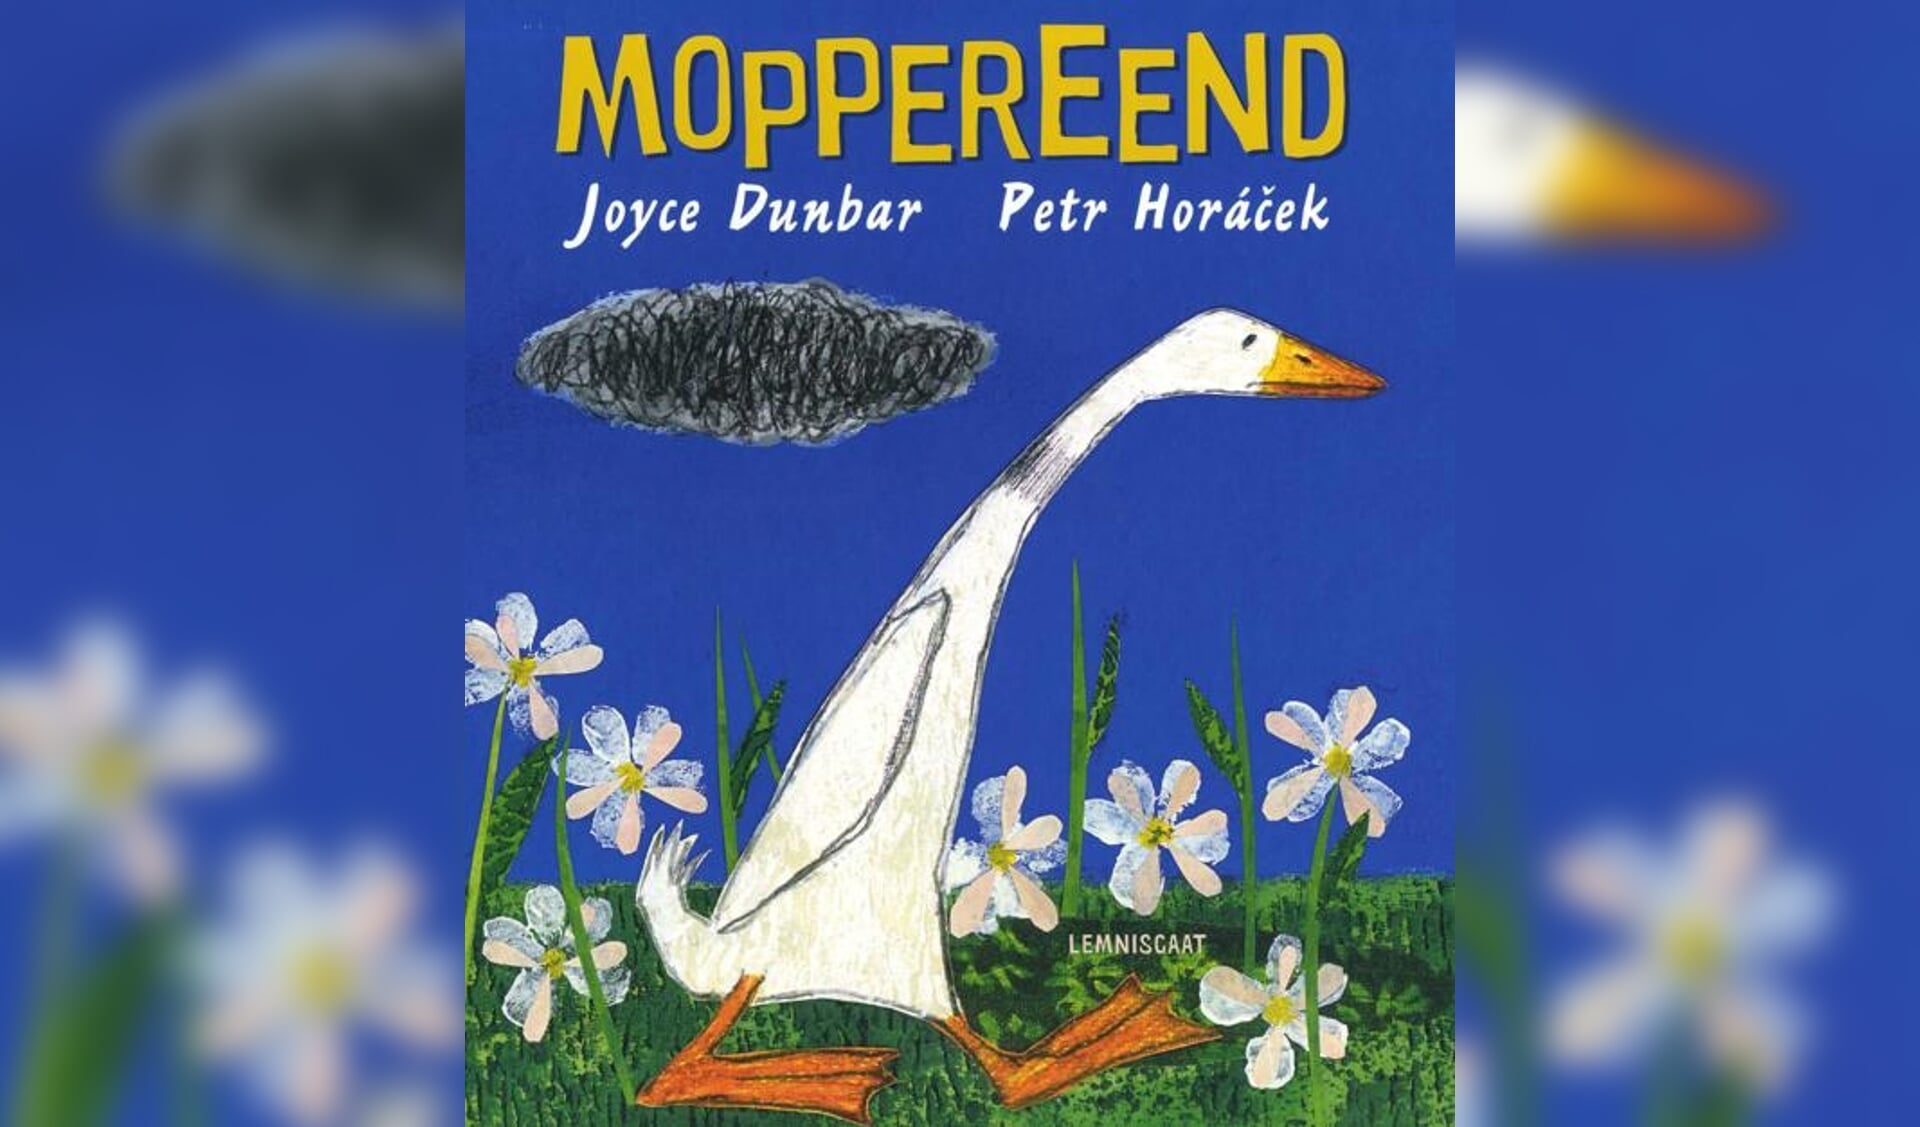 Het thema van de optocht ter ere van de verjaardag van prinses Beatrix, sluit aan bij het boek 'Moppereend' van Joyce Dunbar en Petr Horácek.